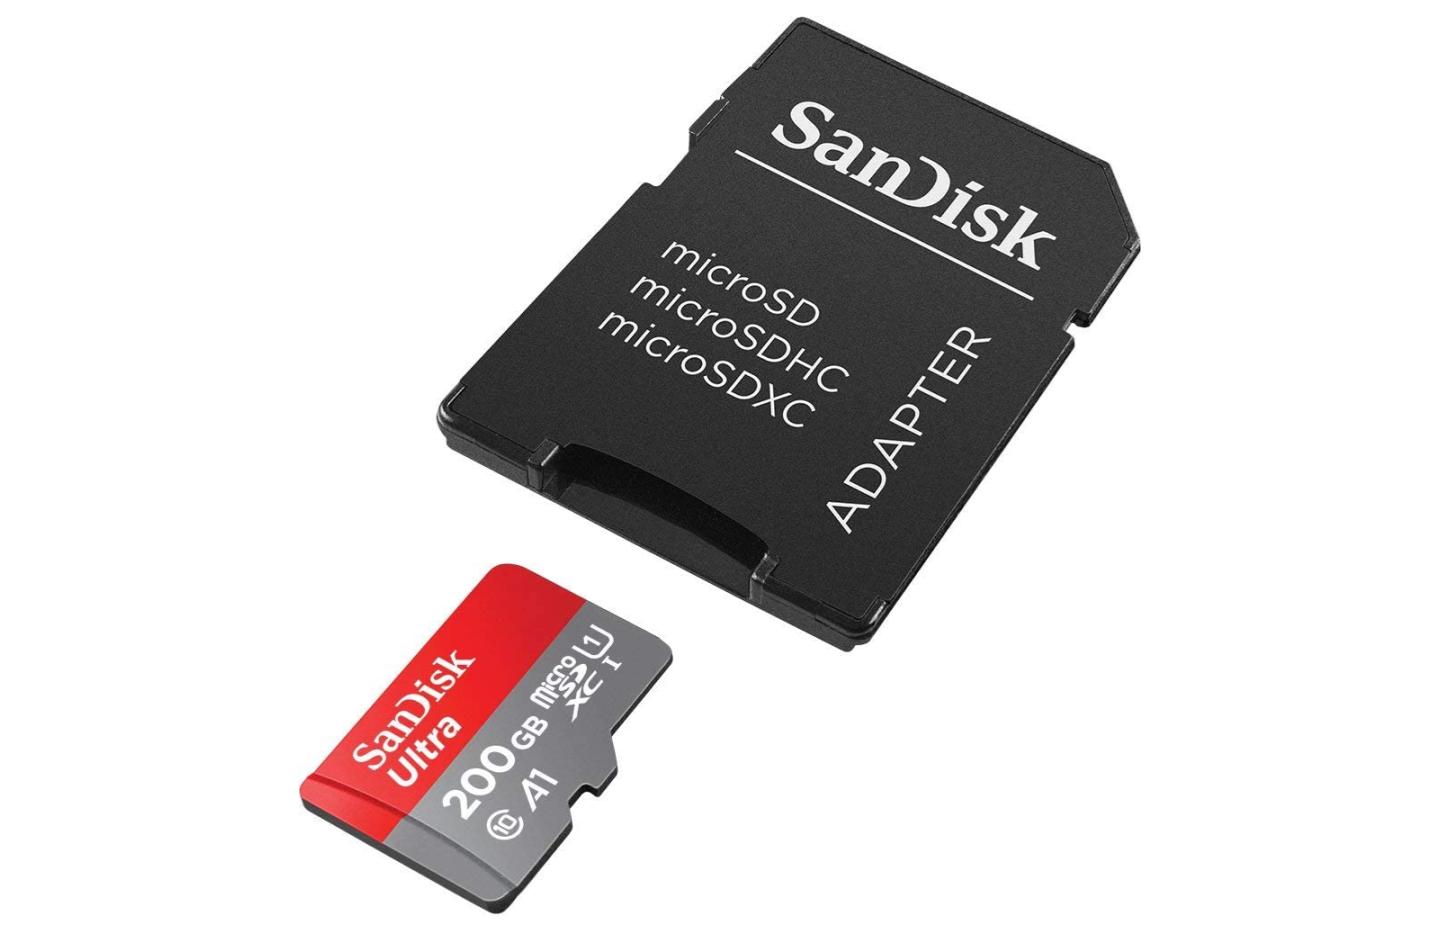 Soldes : Les meilleures offres sur les cartes MicroSD pour votre Nintendo  Switch, votre smartphone ou votre appareil photo ! 